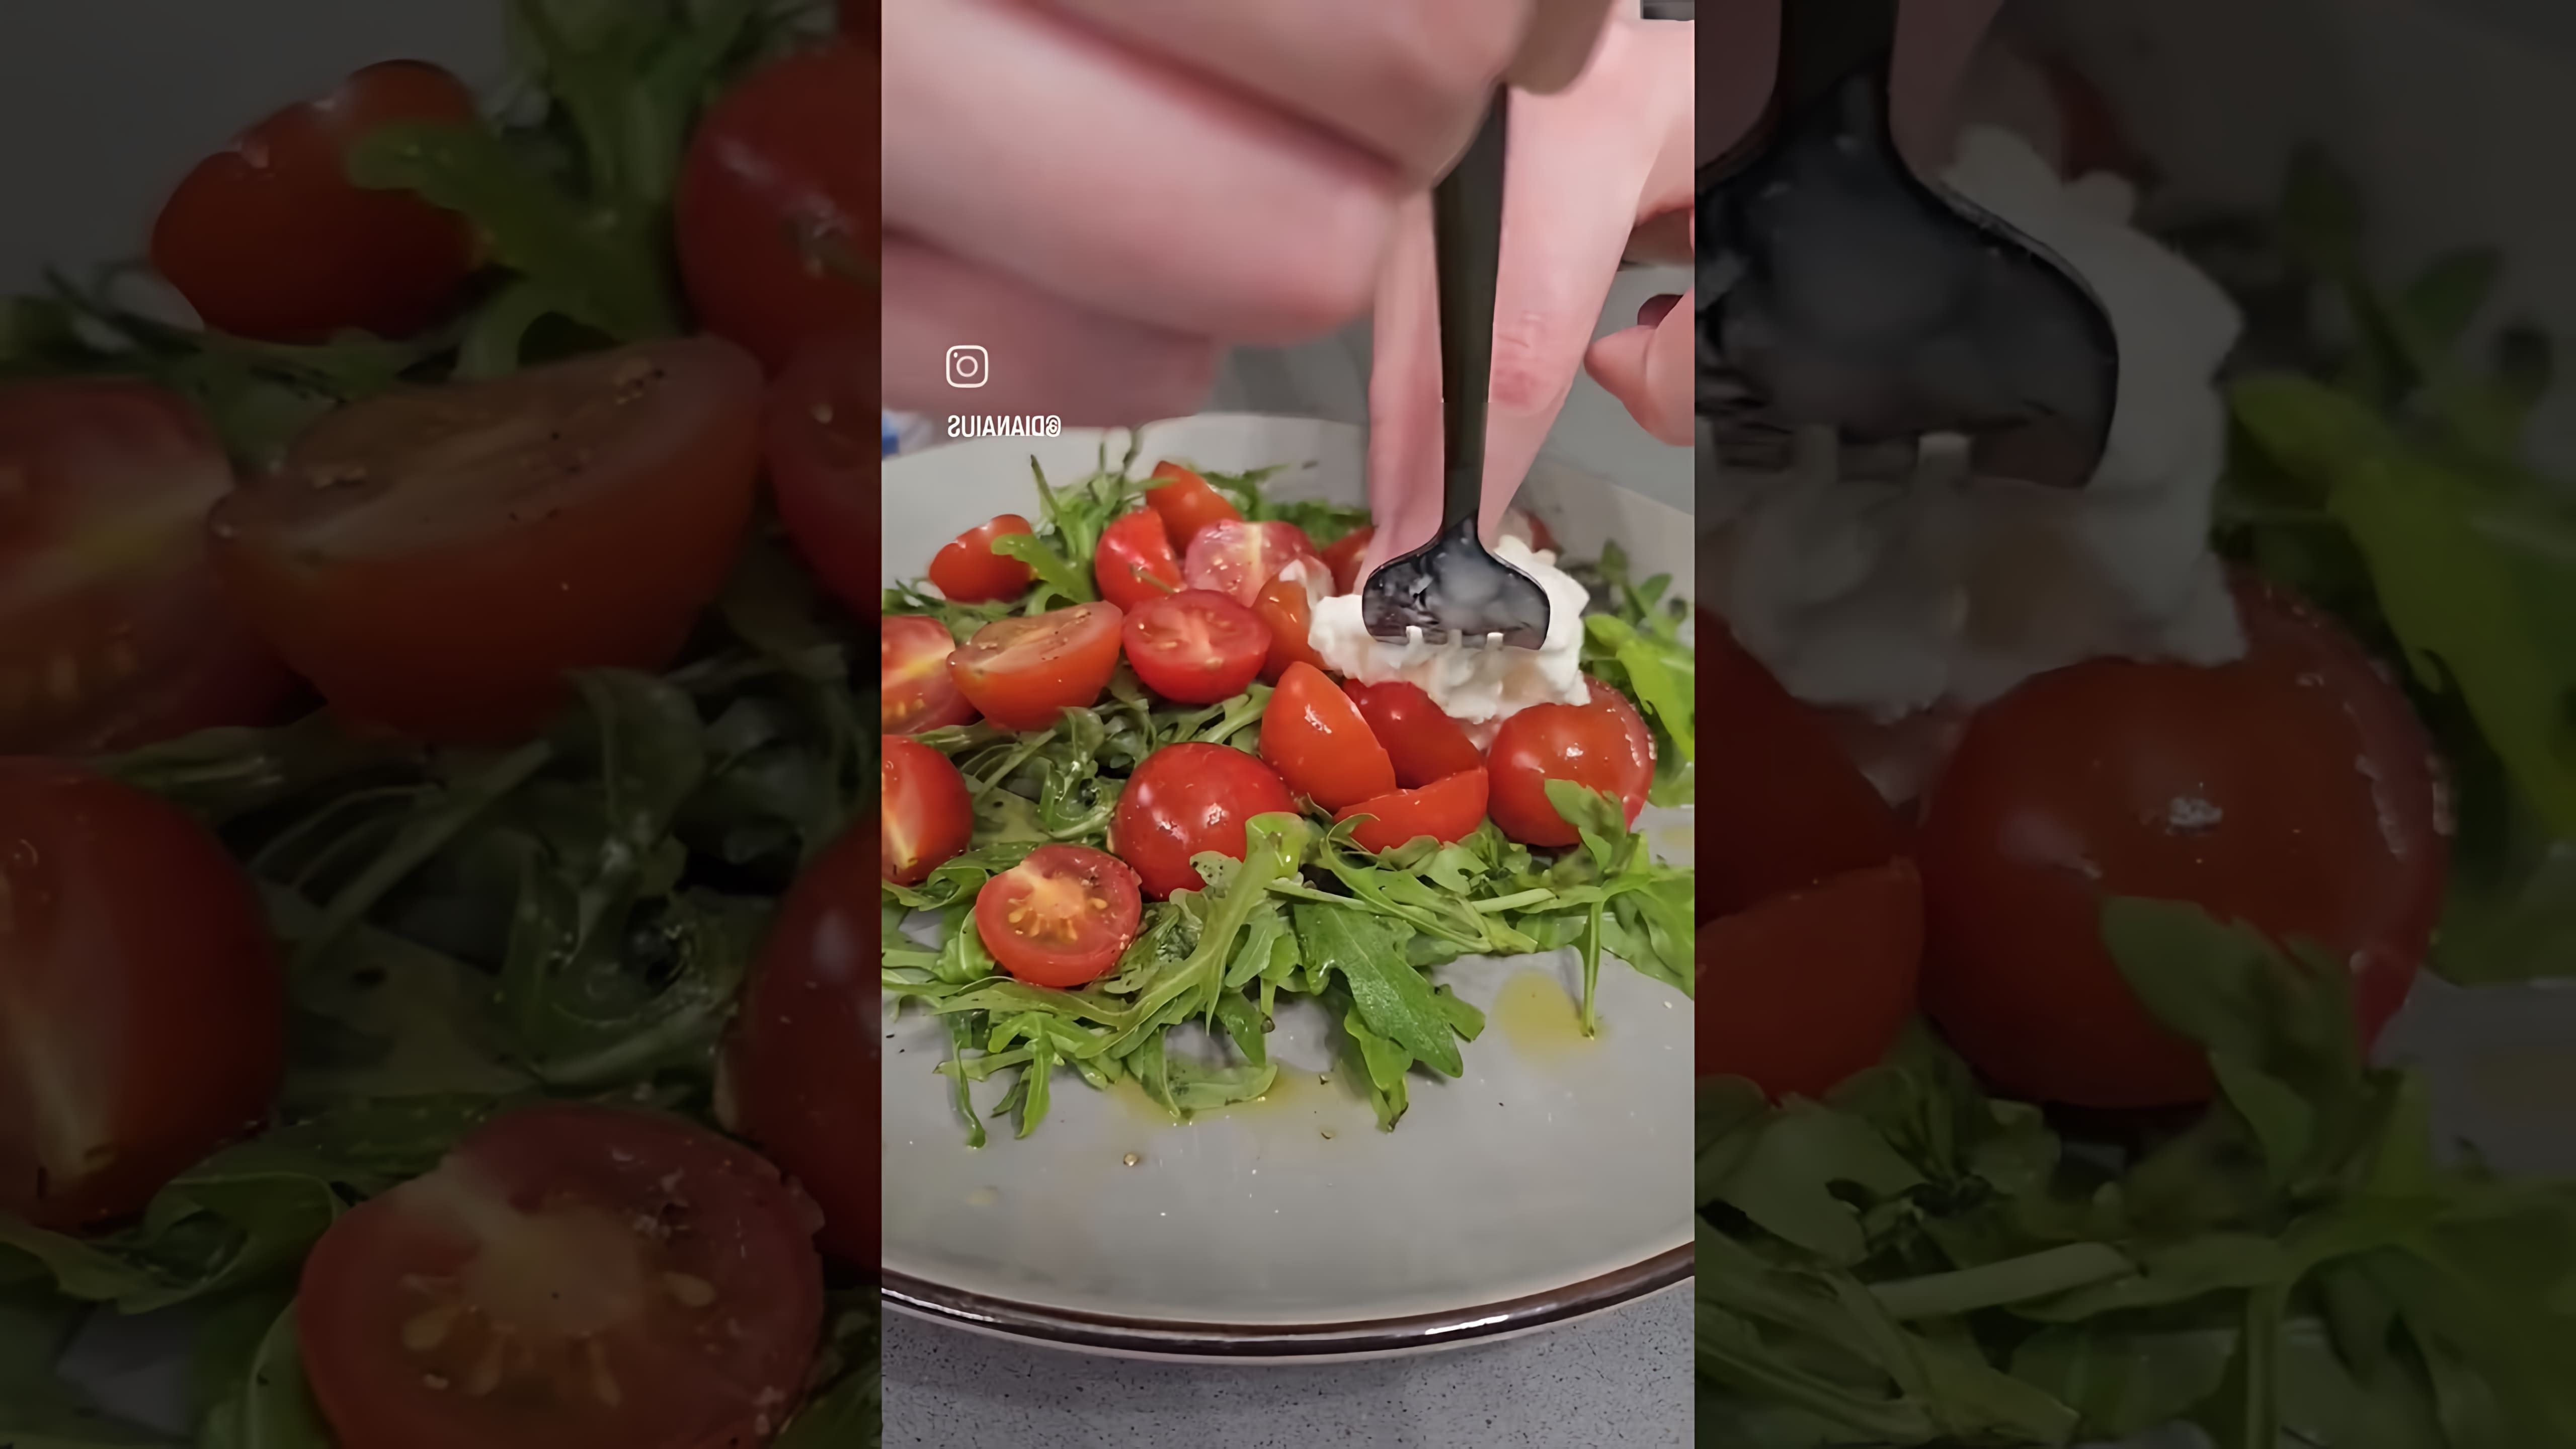 Вкусный и красивый салат с рукколой, помидорами и страчателлой - это видео-ролик, который демонстрирует процесс приготовления вкусного и полезного салата